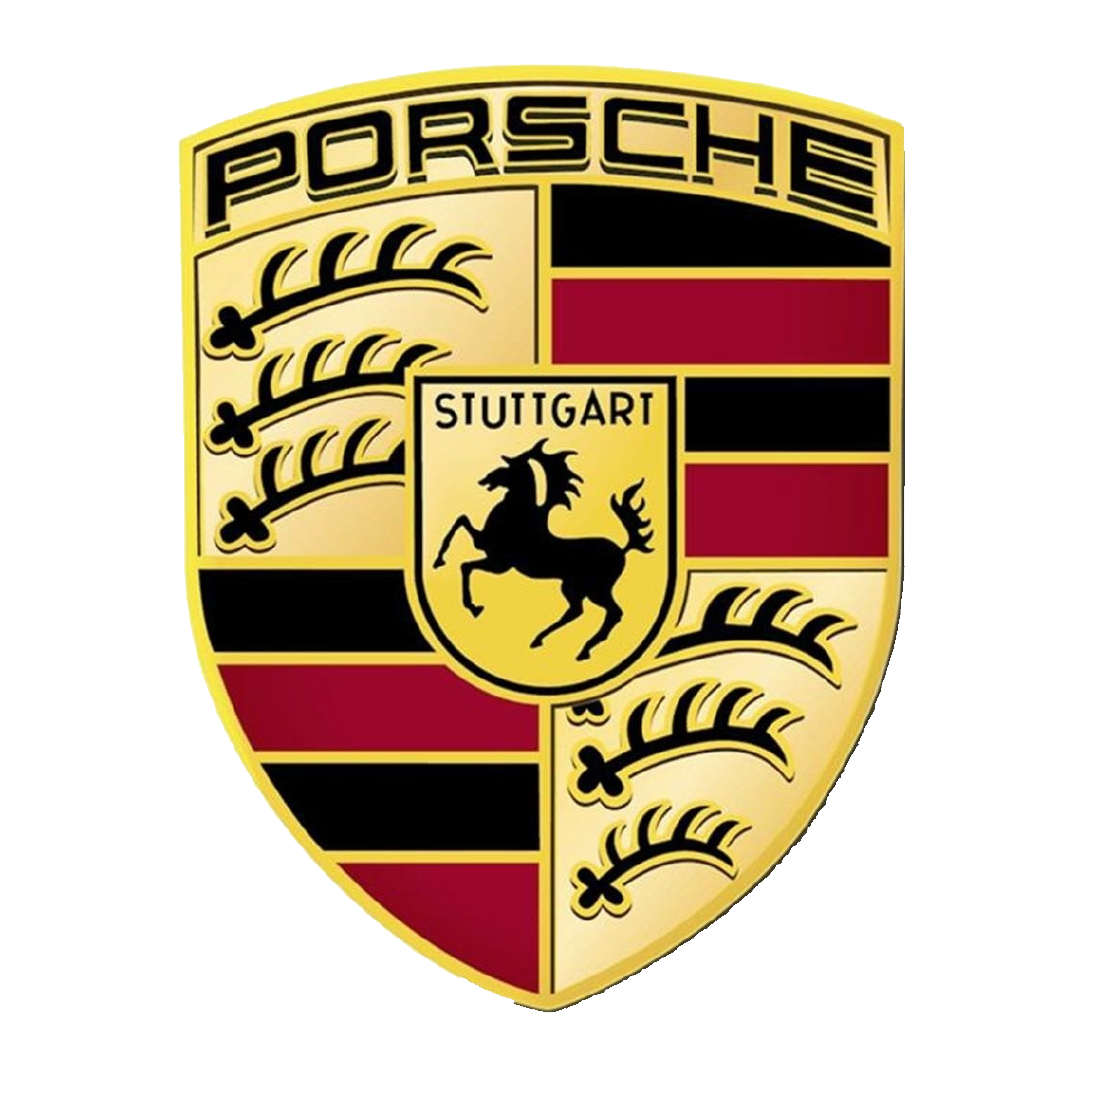 Rencal-Clients_Porsche Logo